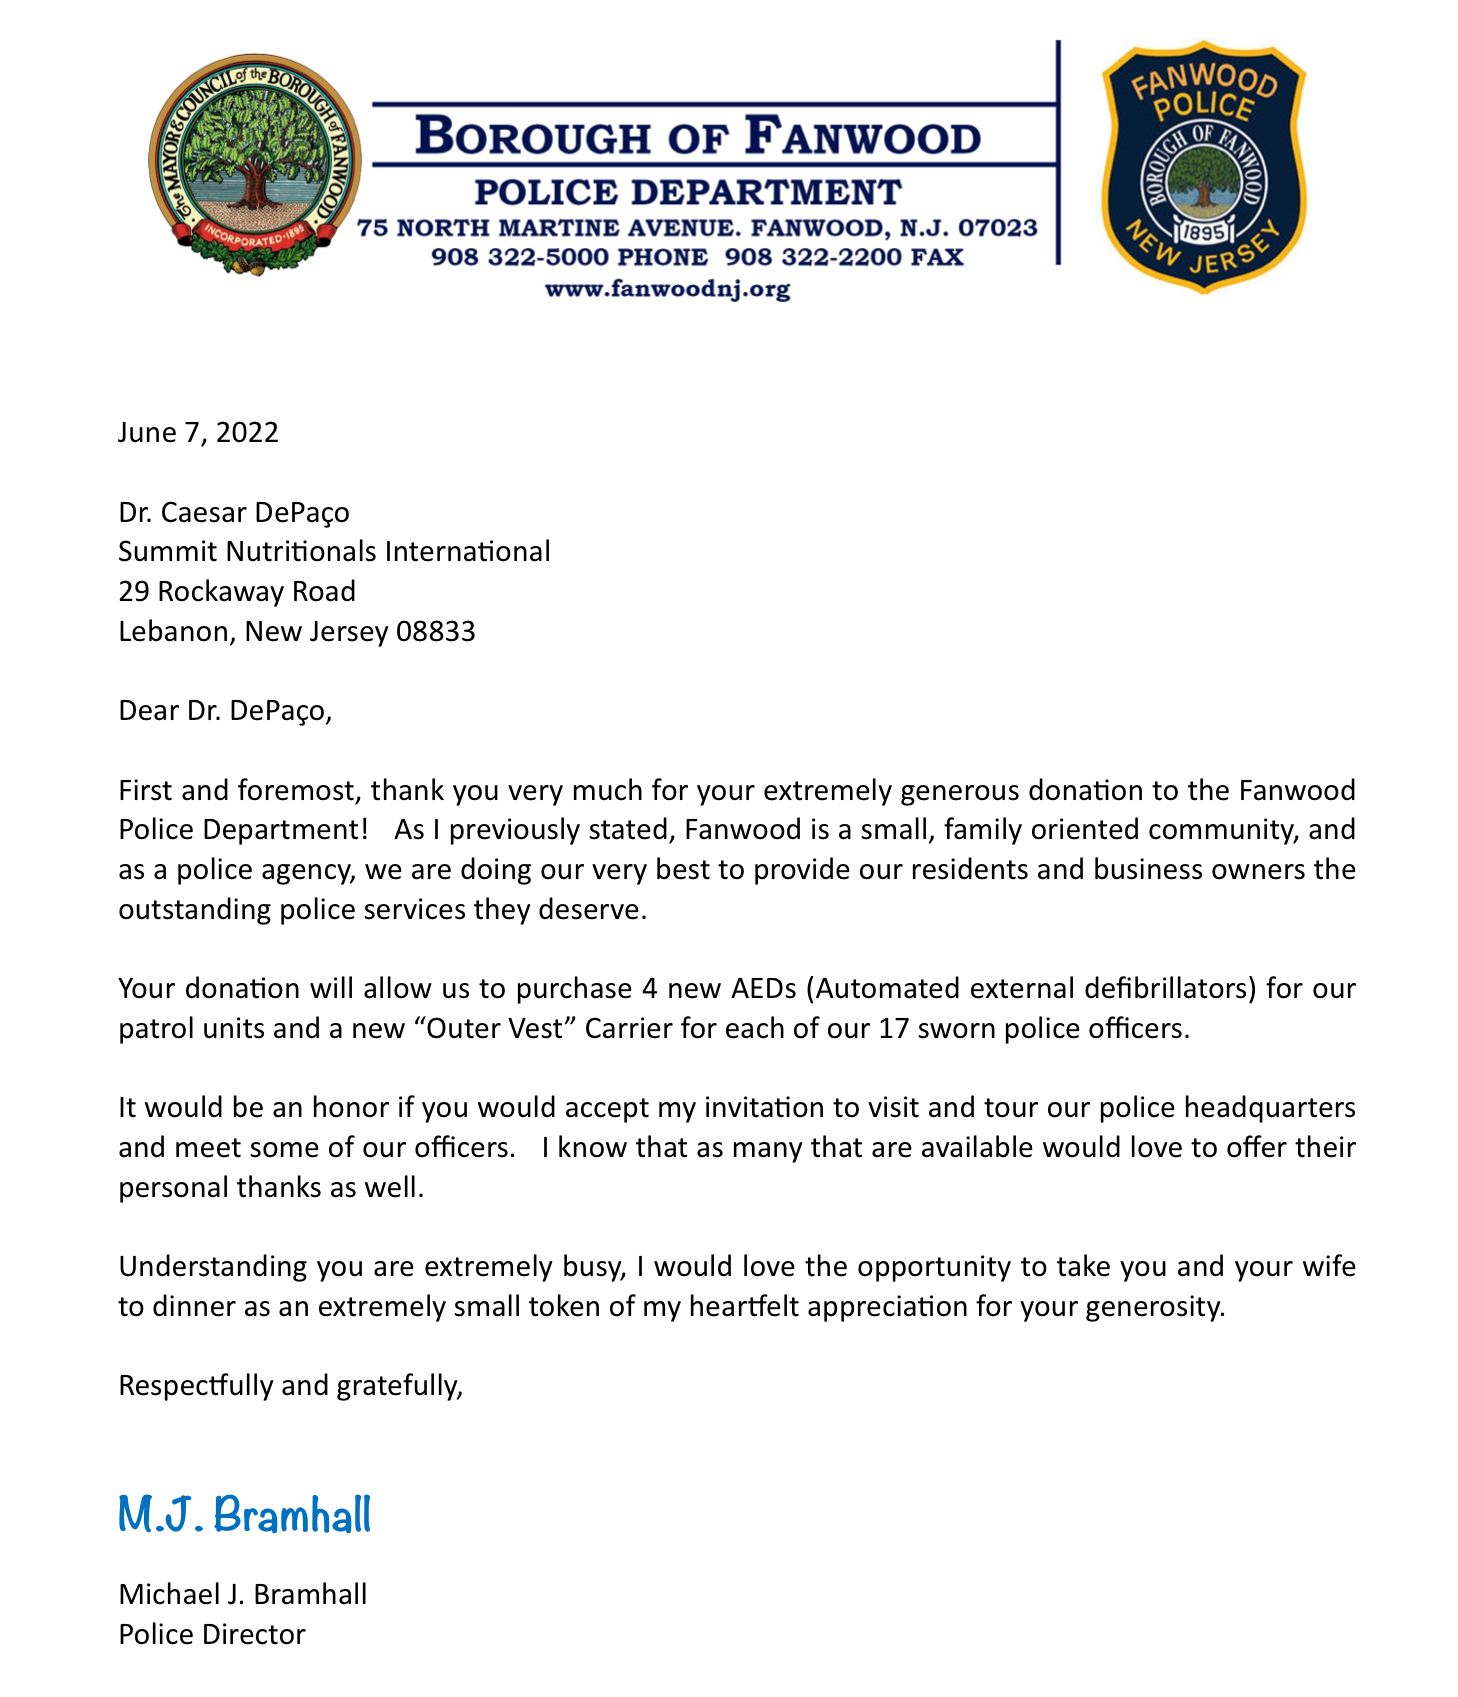 Fanwood Police Department Thanks César DePaço for Generous Donation